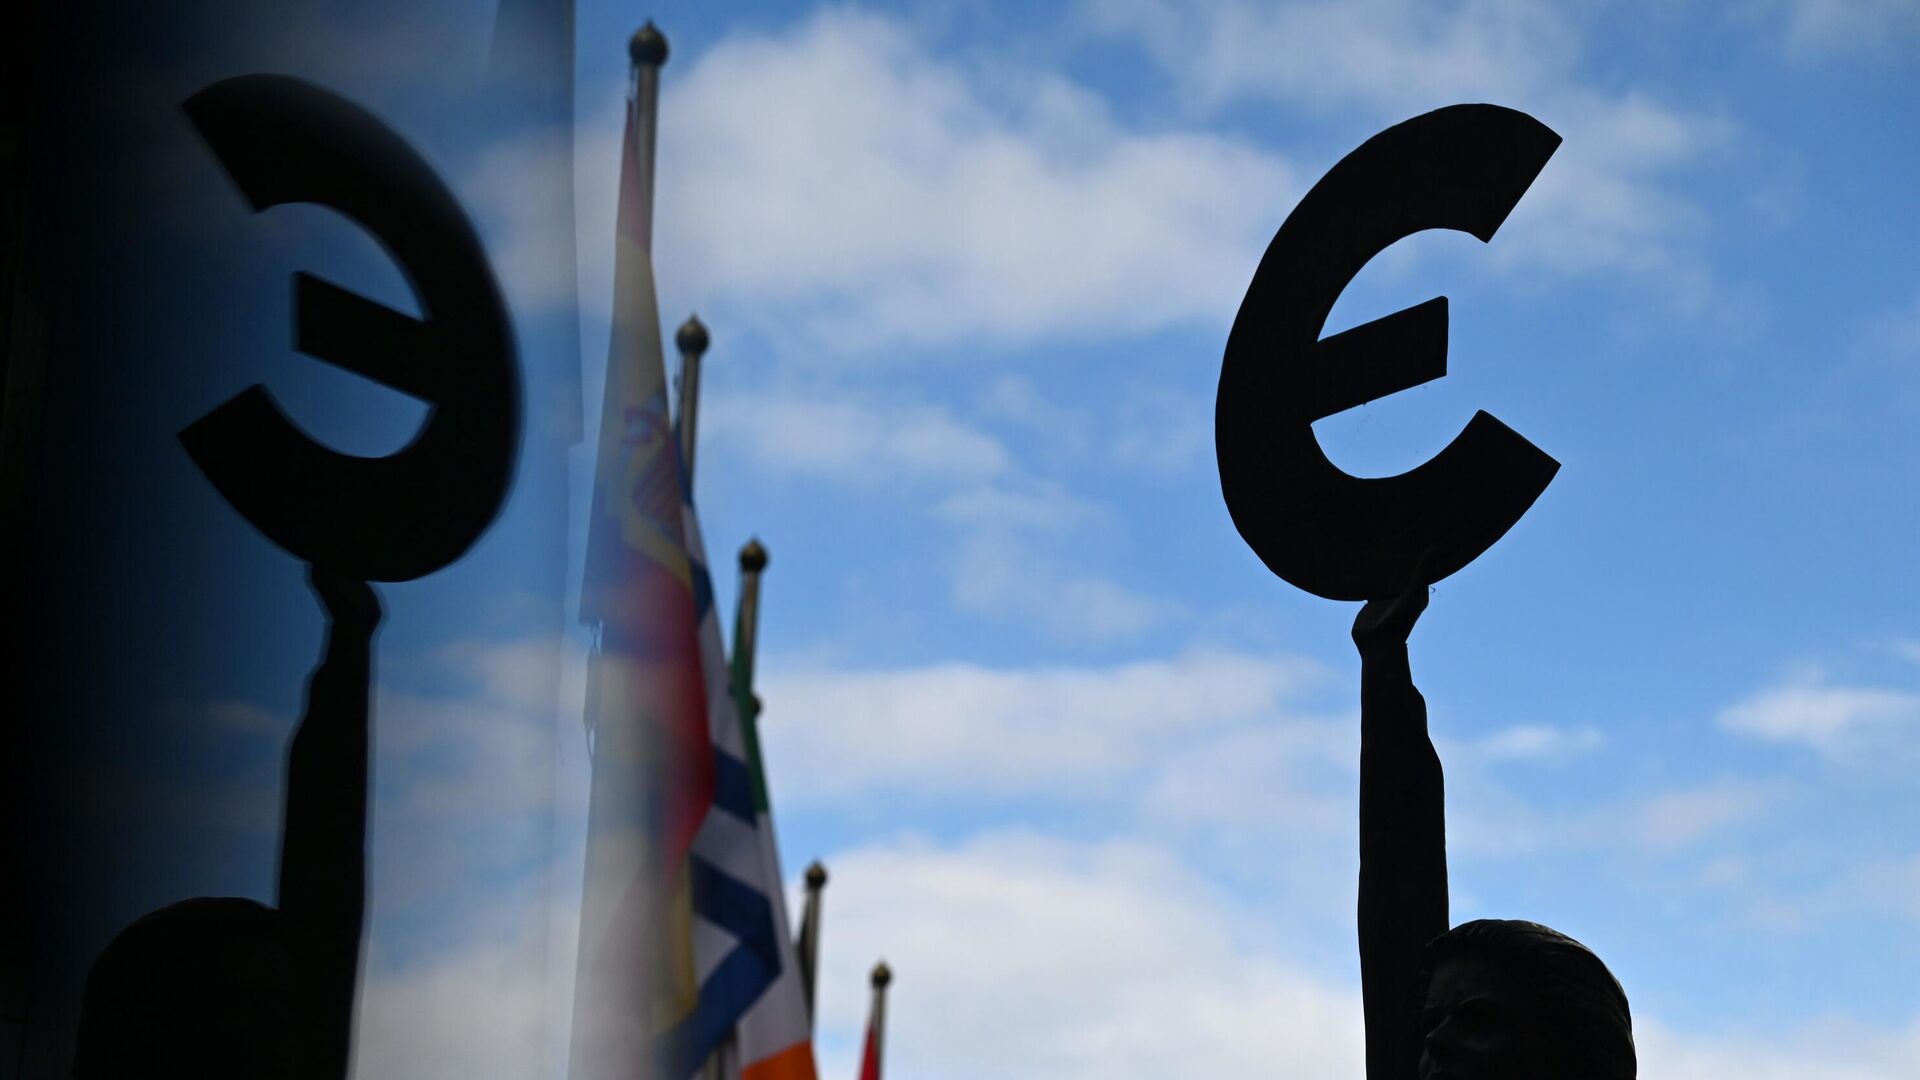 Памятник-скульптура знаку Евро у здания штаб-квартиры Европейского парламента в Брюсселе - РИА Новости, 1920, 07.11.2022